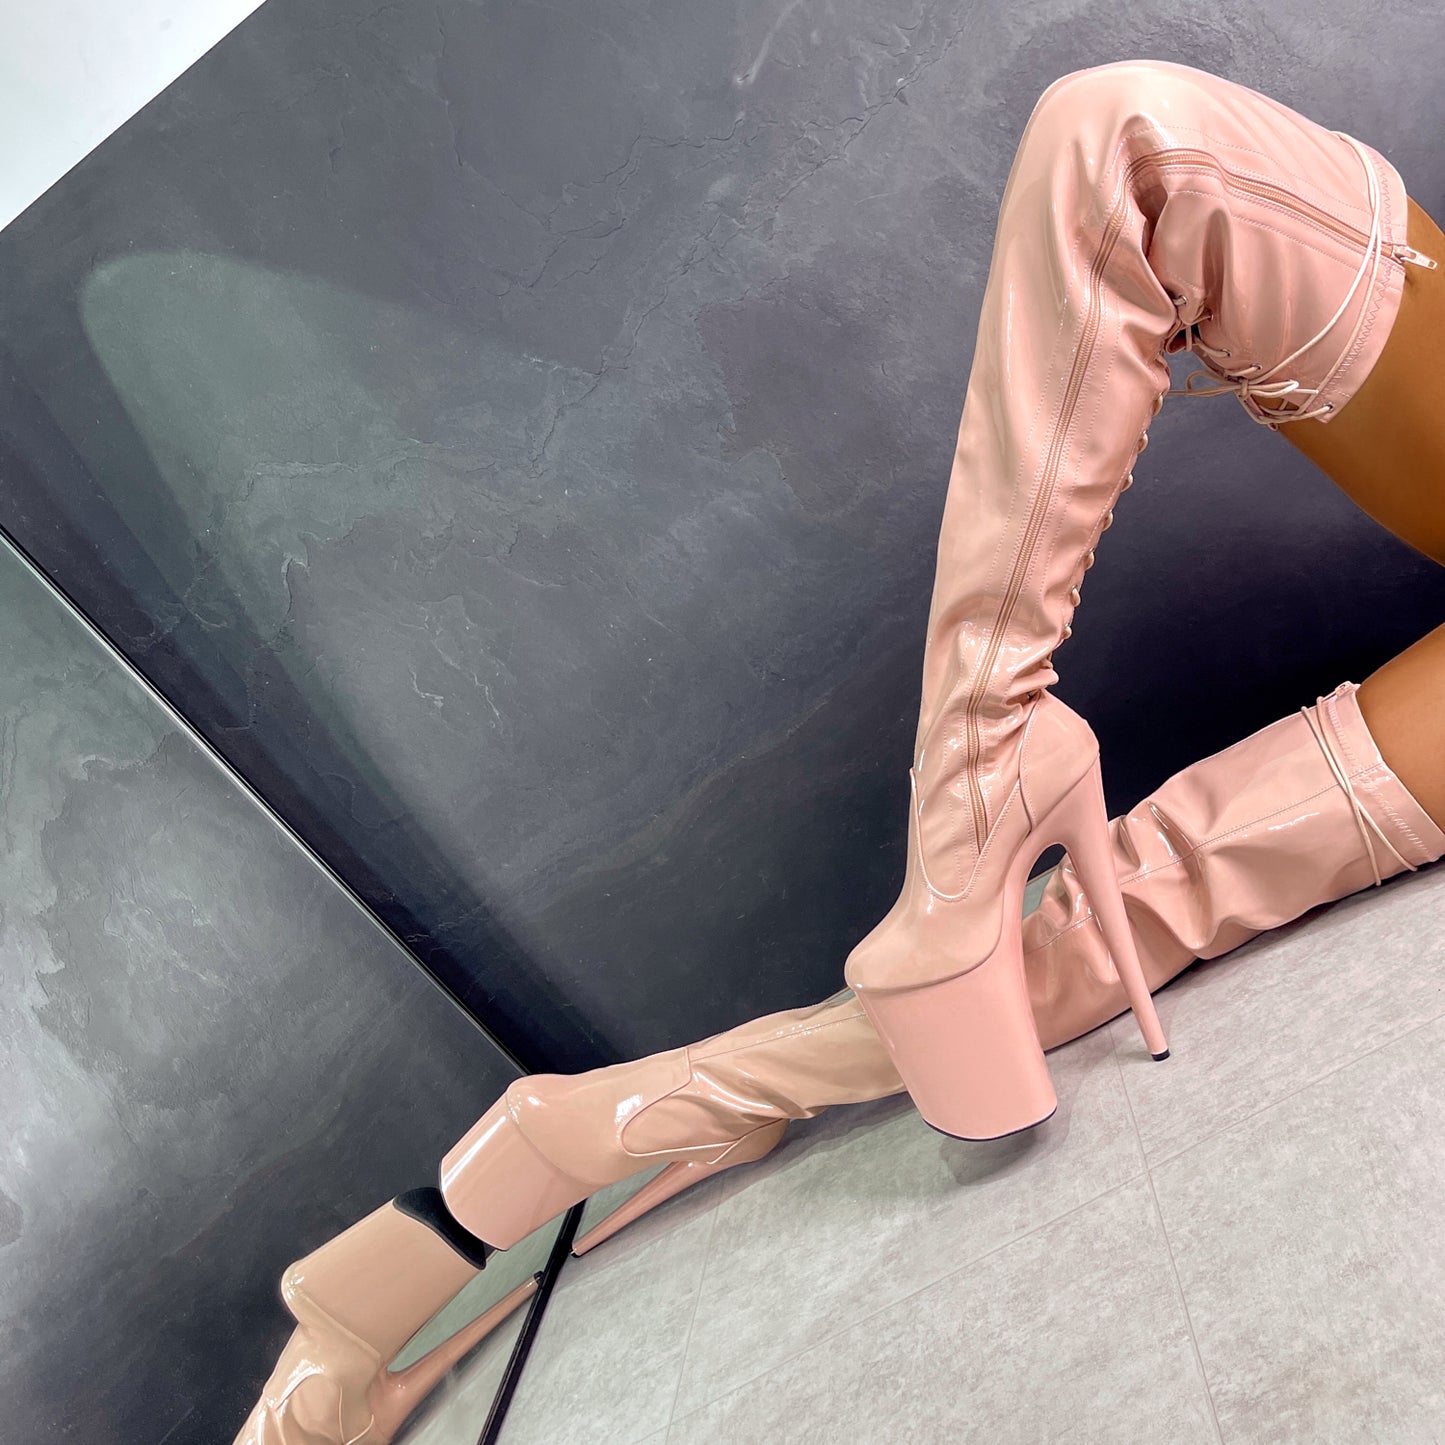 LipKit Thigh High - Dream On - 9 INCH, stripper shoe, stripper heel, pole heel, not a pleaser, platform, dancer, pole dance, floor work